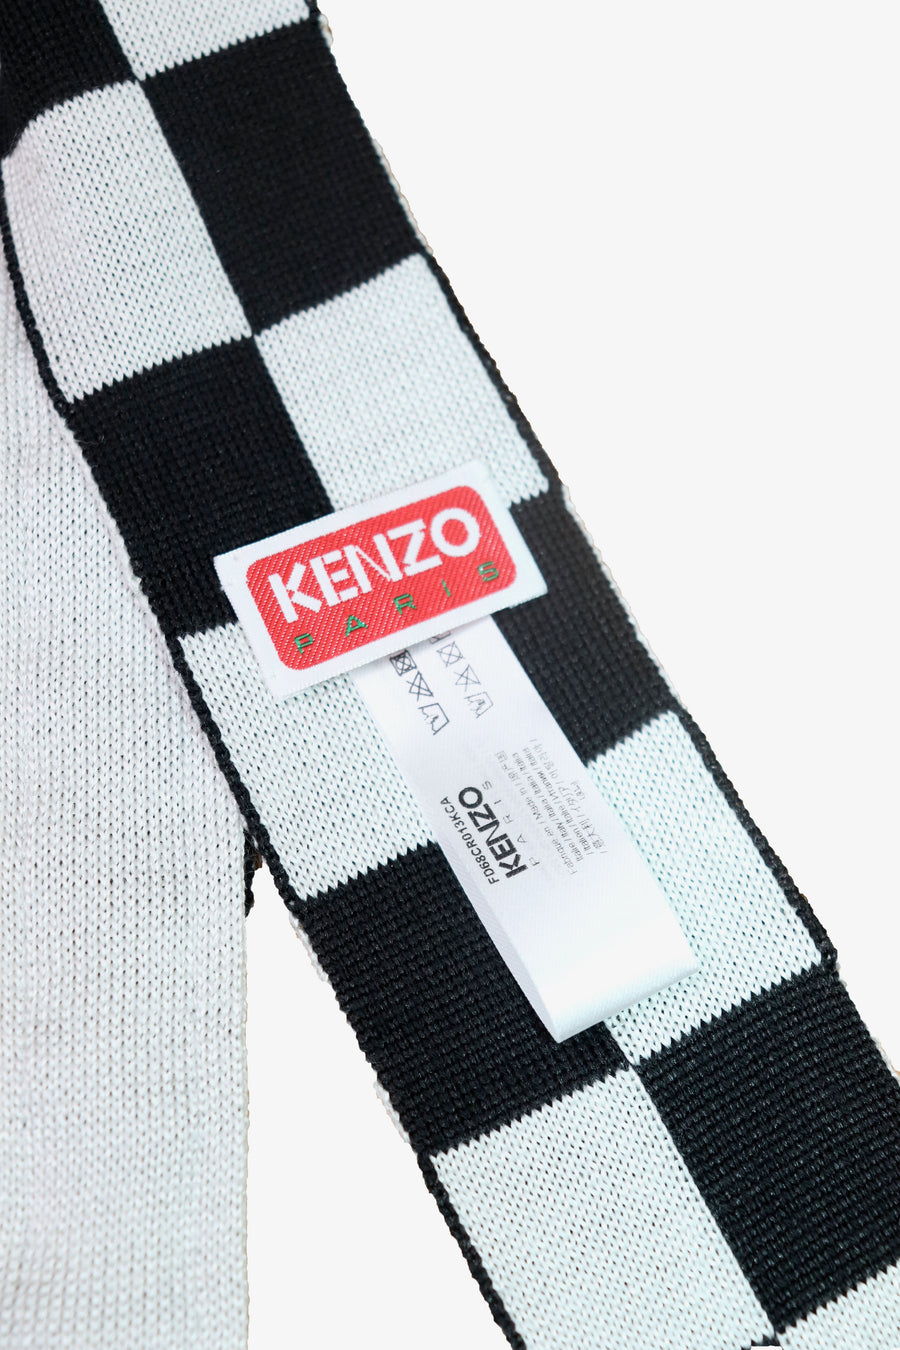 KENZO  Tie(OFF WHITE)